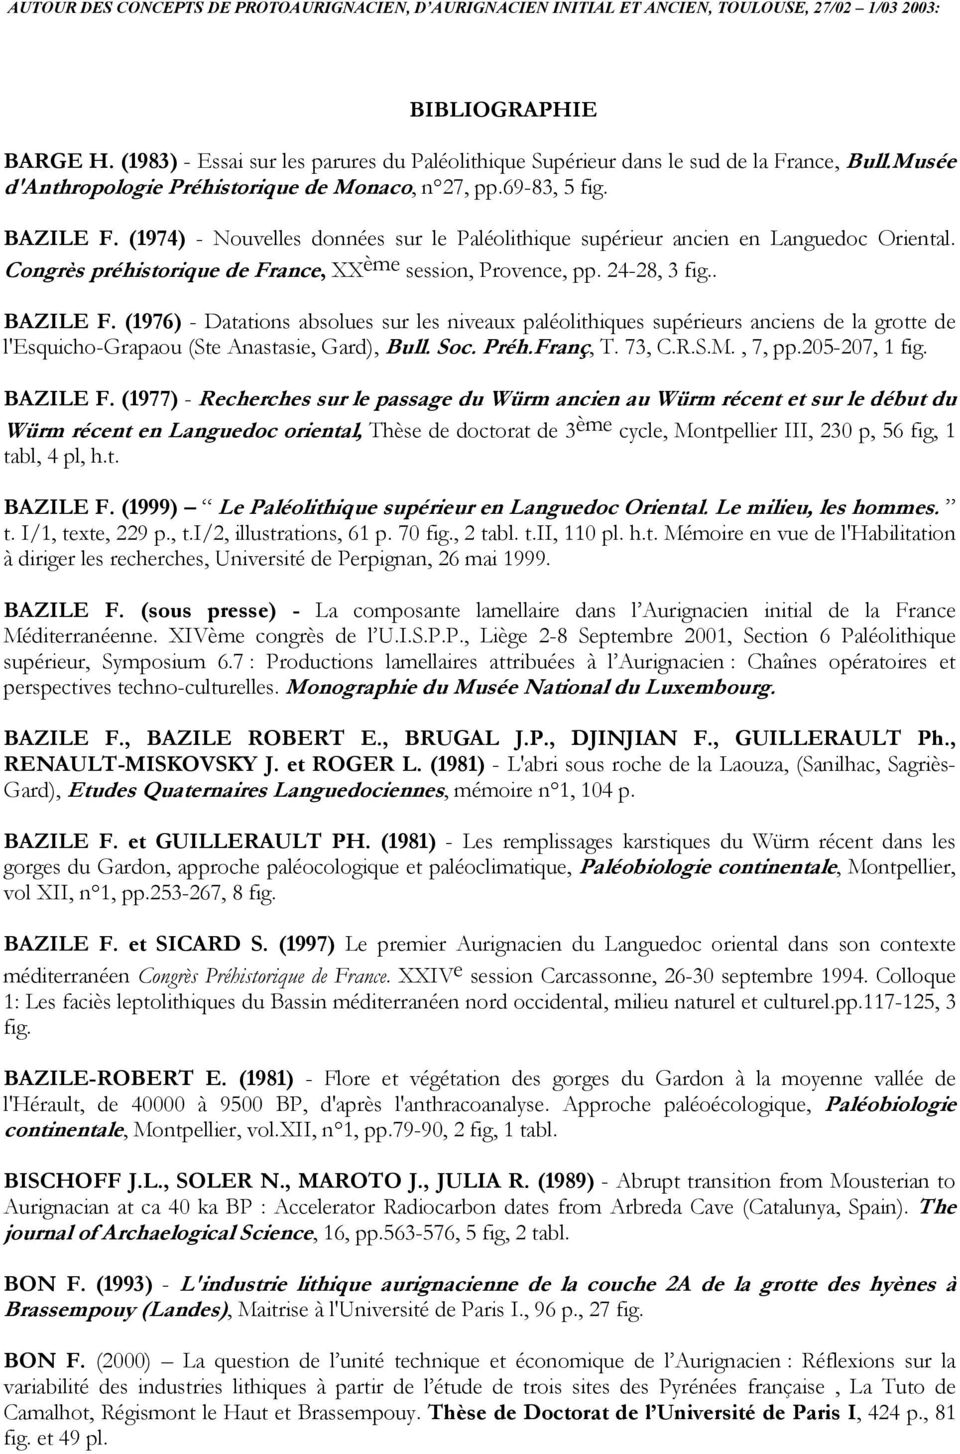 (1976) - Datations absolues sur les niveaux paléolithiques supérieurs anciens de la grotte de l'esquicho-grapaou (Ste Anastasie, Gard), Bull. Soc. Préh.Franç, T. 73, C.R.S.M., 7, pp.205-207, 1 fig.